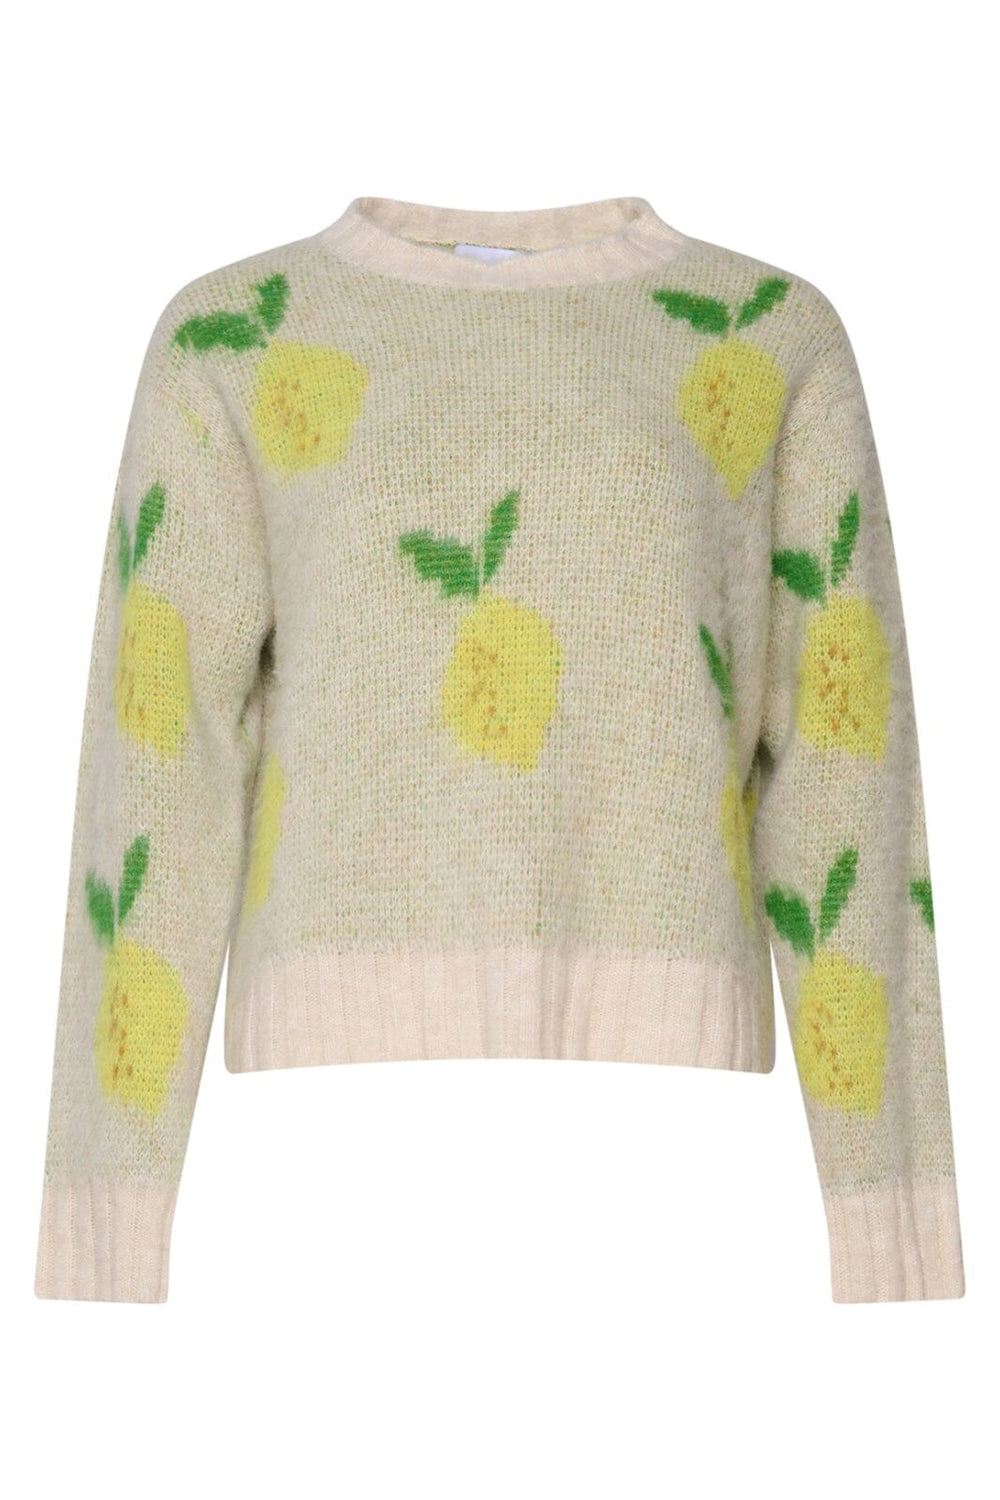 Noella - Ajax Knit Sweater - Yellow Mix 